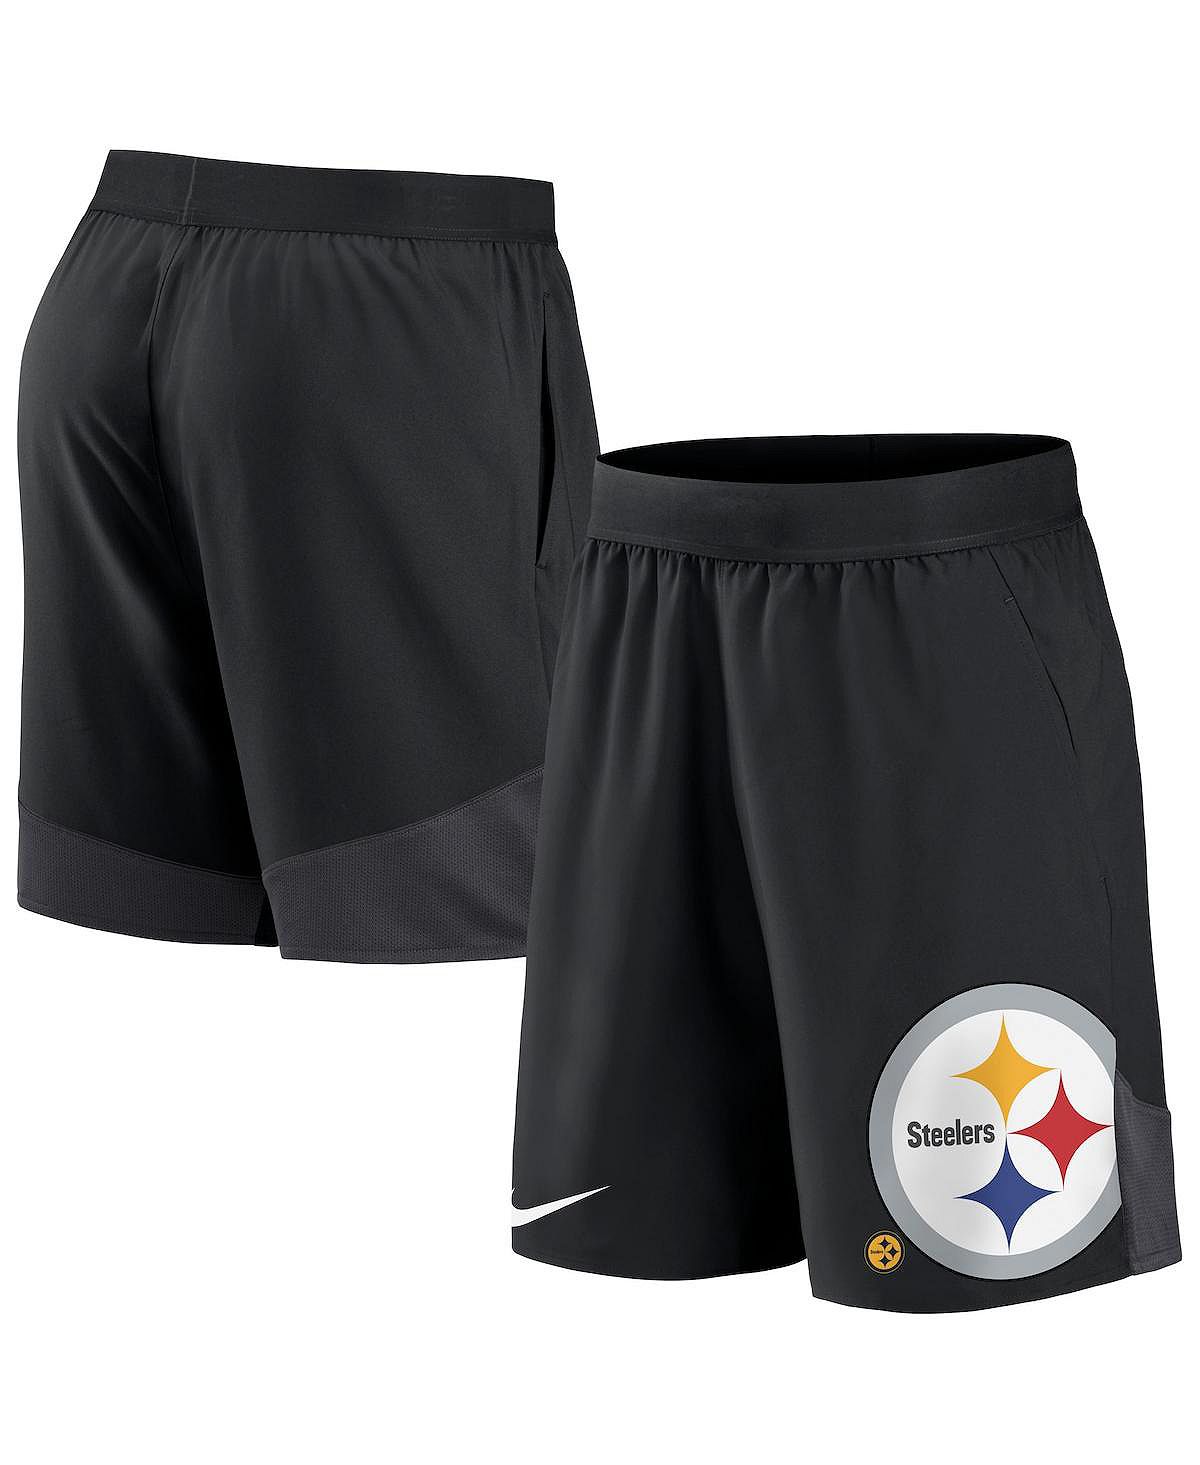 цена Мужские черные эластичные спортивные шорты Pittsburgh Steelers Nike